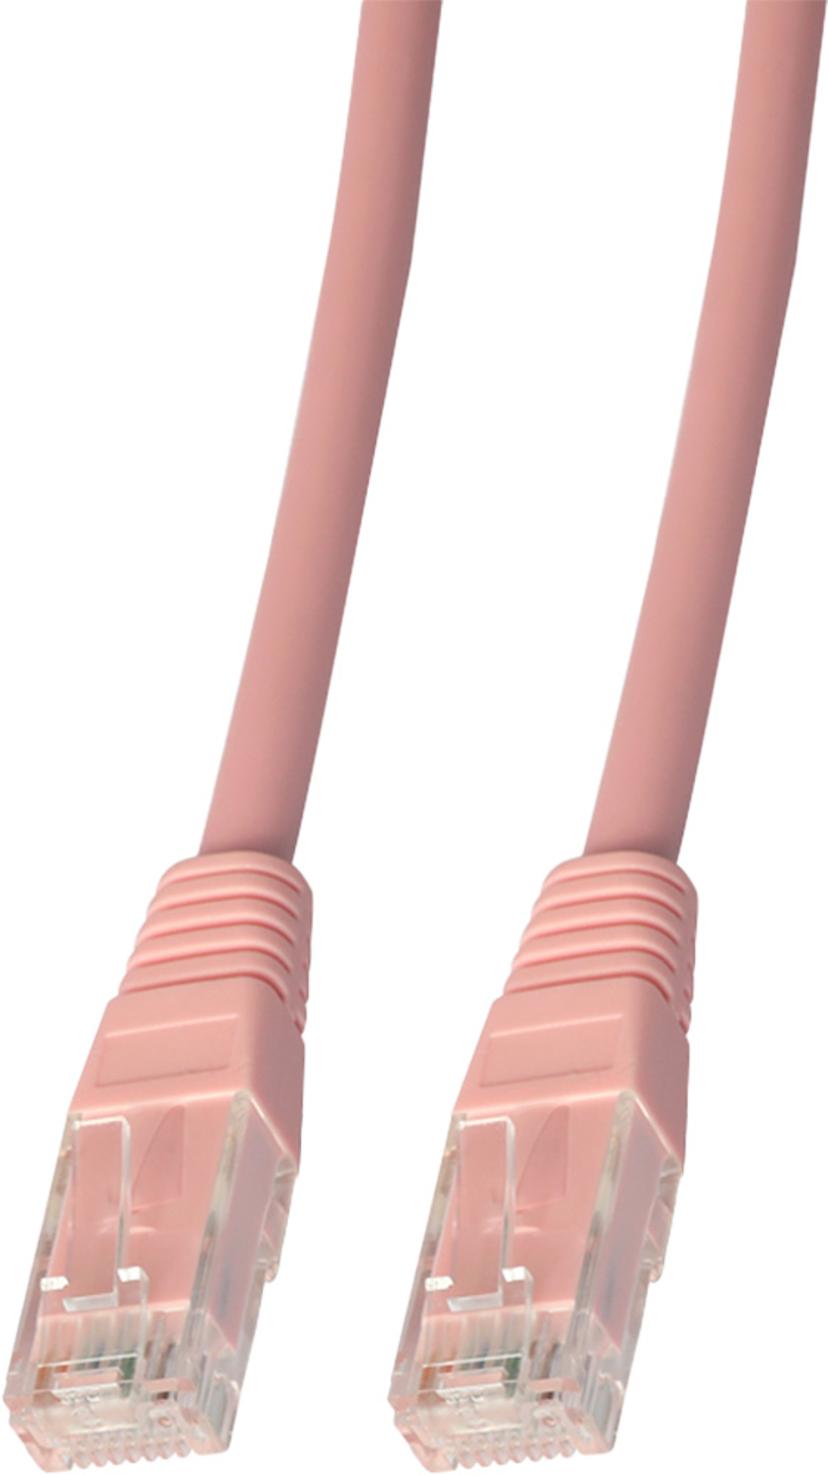 Prokord Tp-cable UTP Cat.6 Unshielded Lszh Rj45 3M Pink RJ-45 RJ-45 CAT 6 3m Pinkki